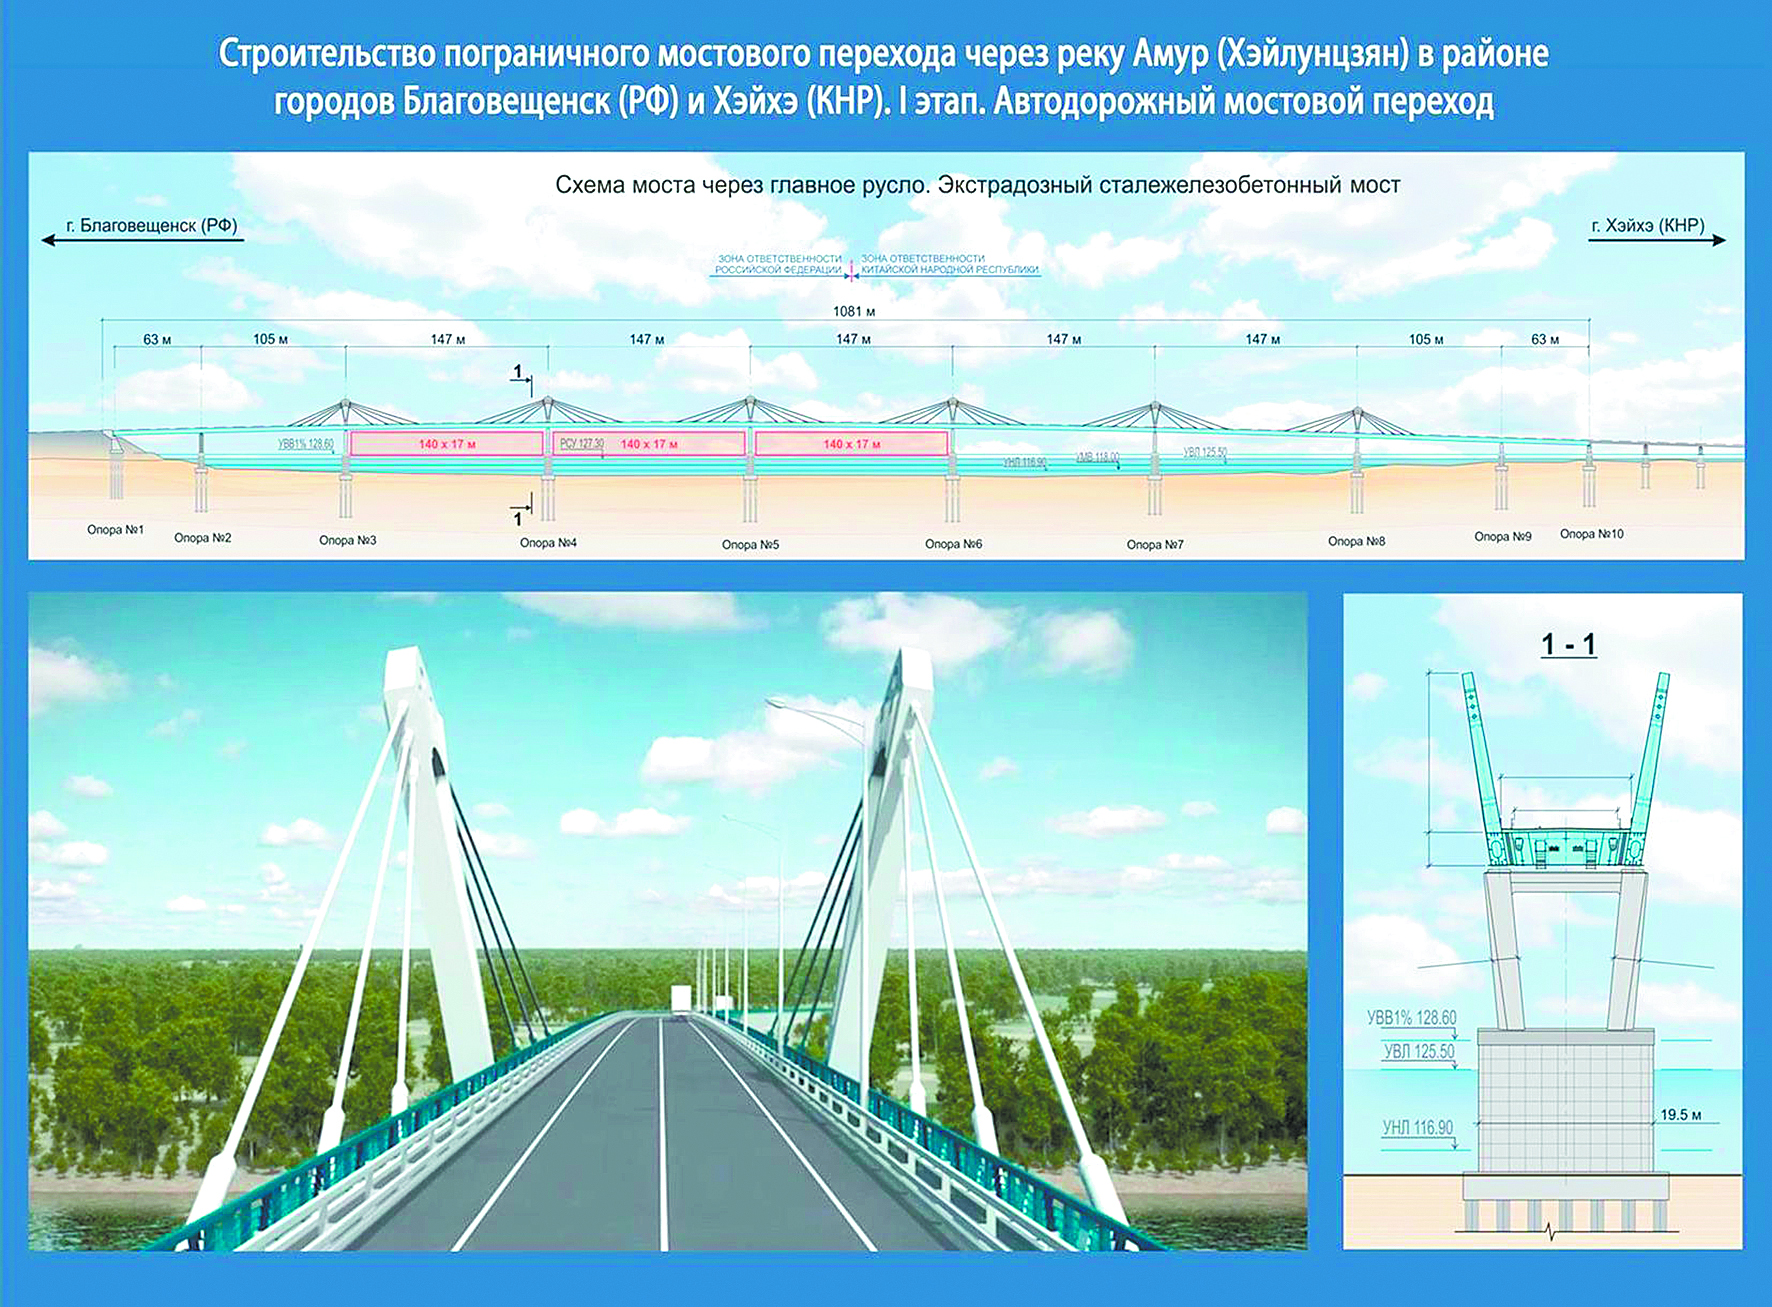 Мост через реку амур: где находится, особенности сооружения, интересные факты, длина, ширина, история строительства